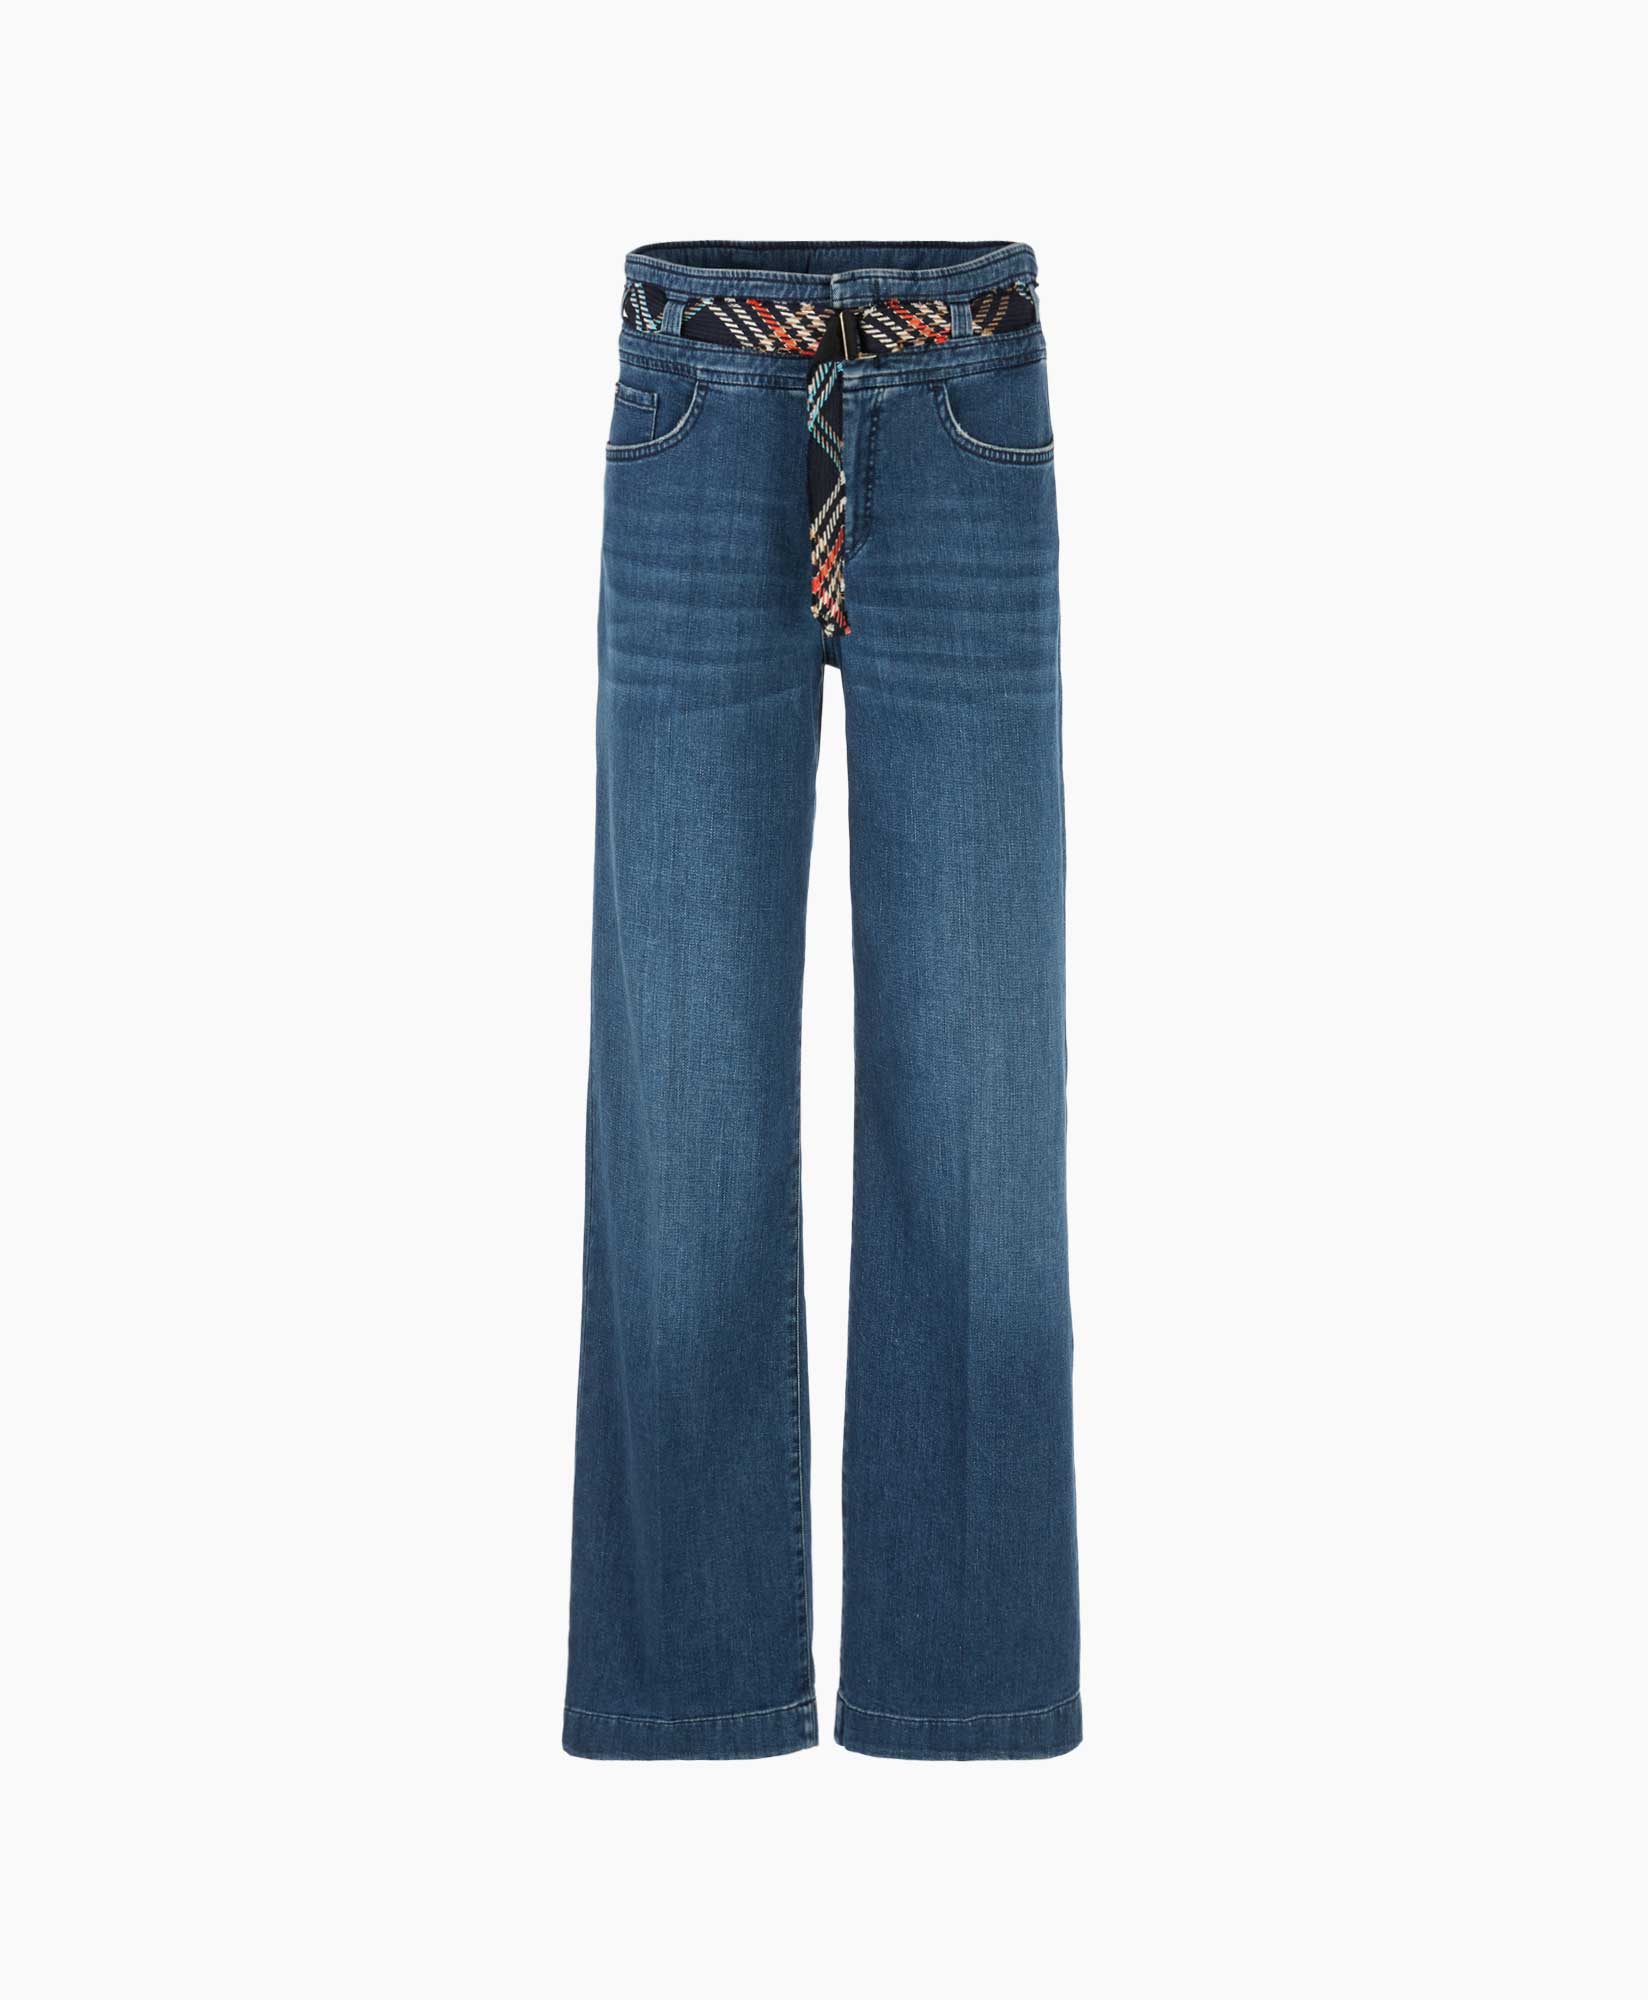 Jeans Wc 82.04 D07 Jeans